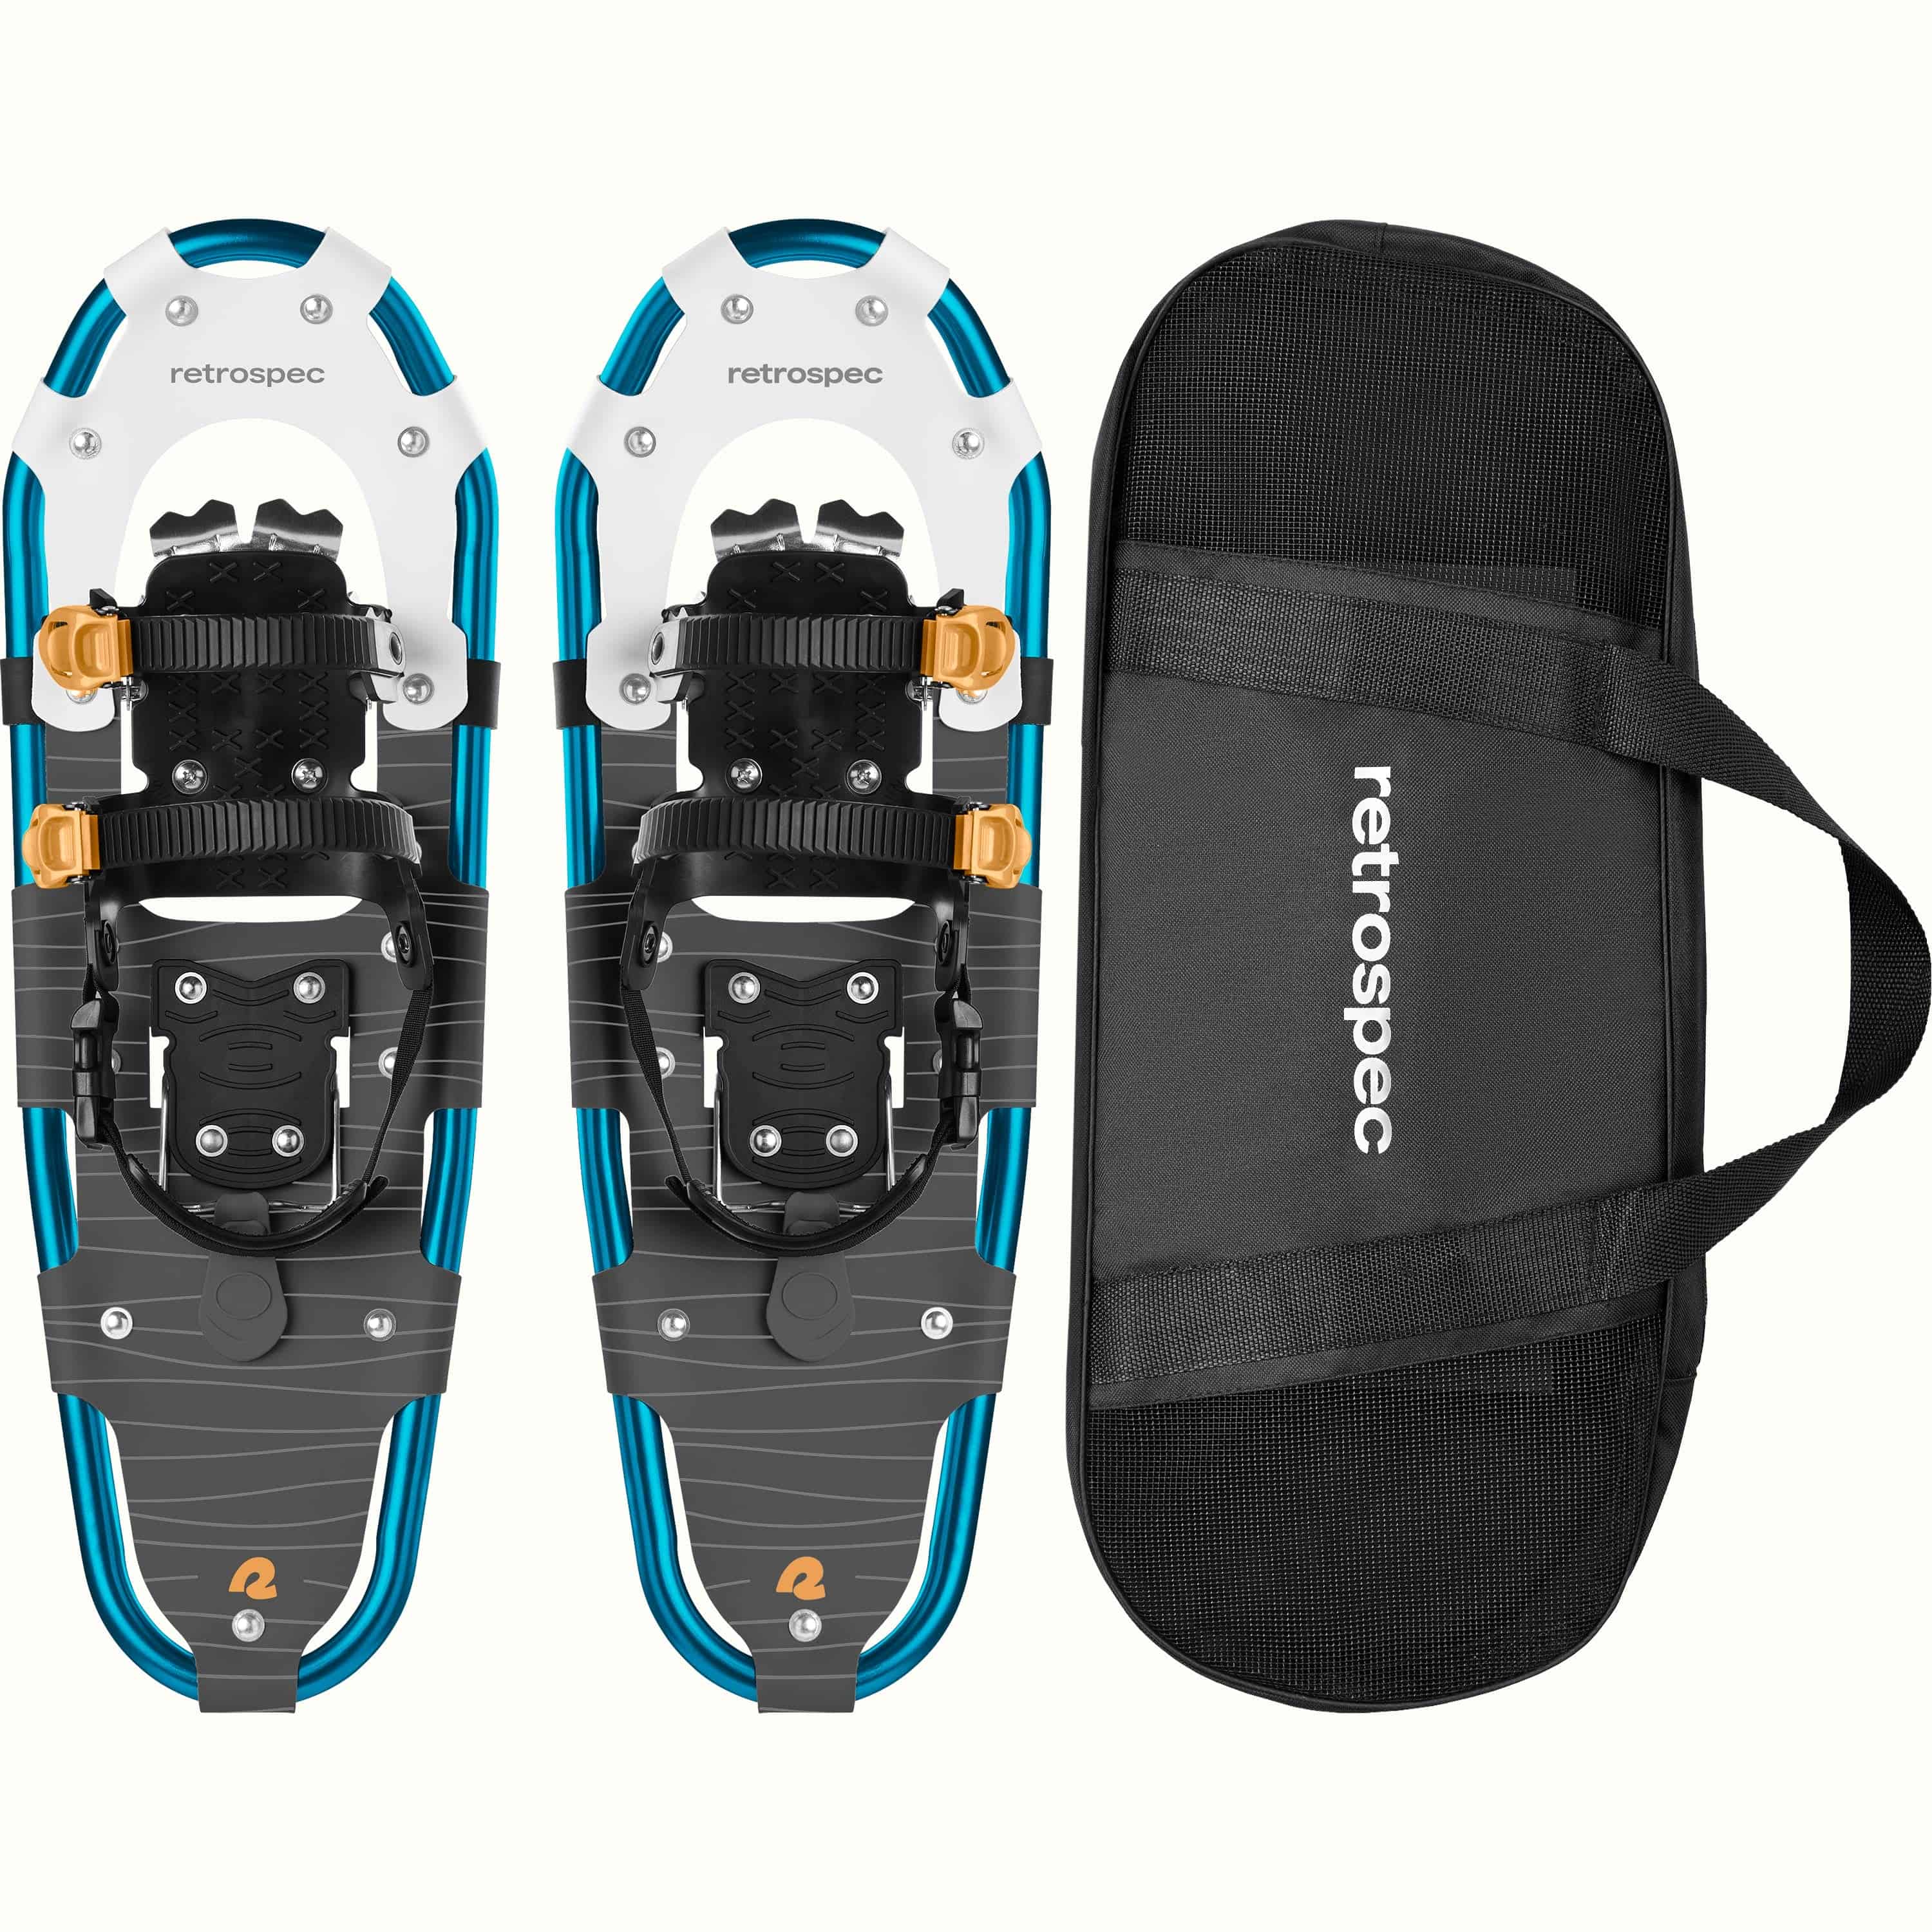 Drifter Lightweight Snowshoes